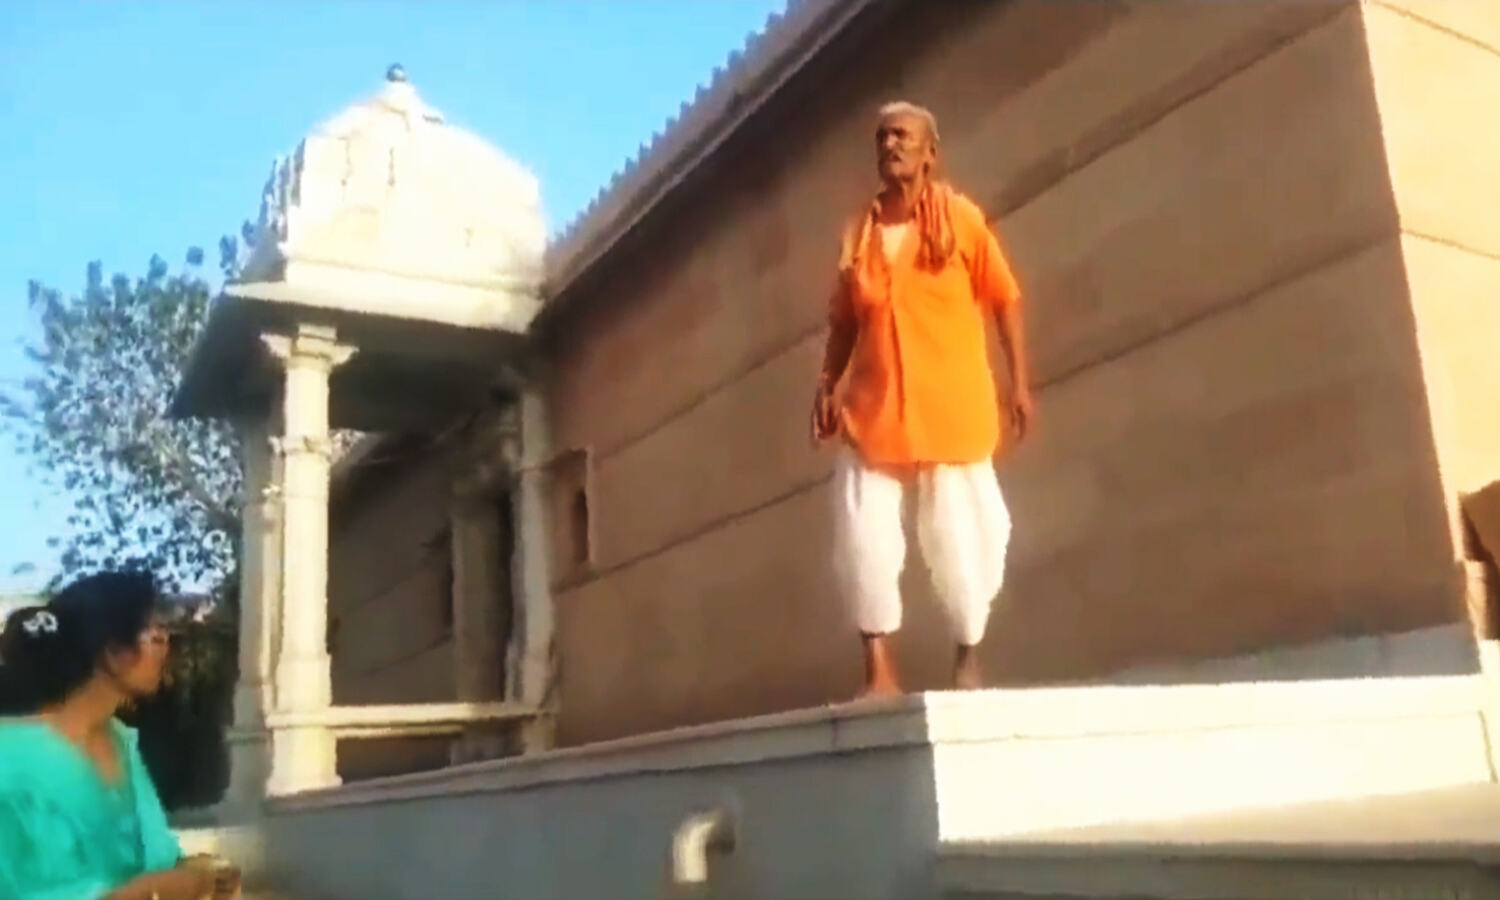 Rajasthan Crime News : पुजारी ने नवविवाहित दलित जोड़े को मंदिर जाने से रोका, SC-ST एक्ट के तहत केस दर्ज